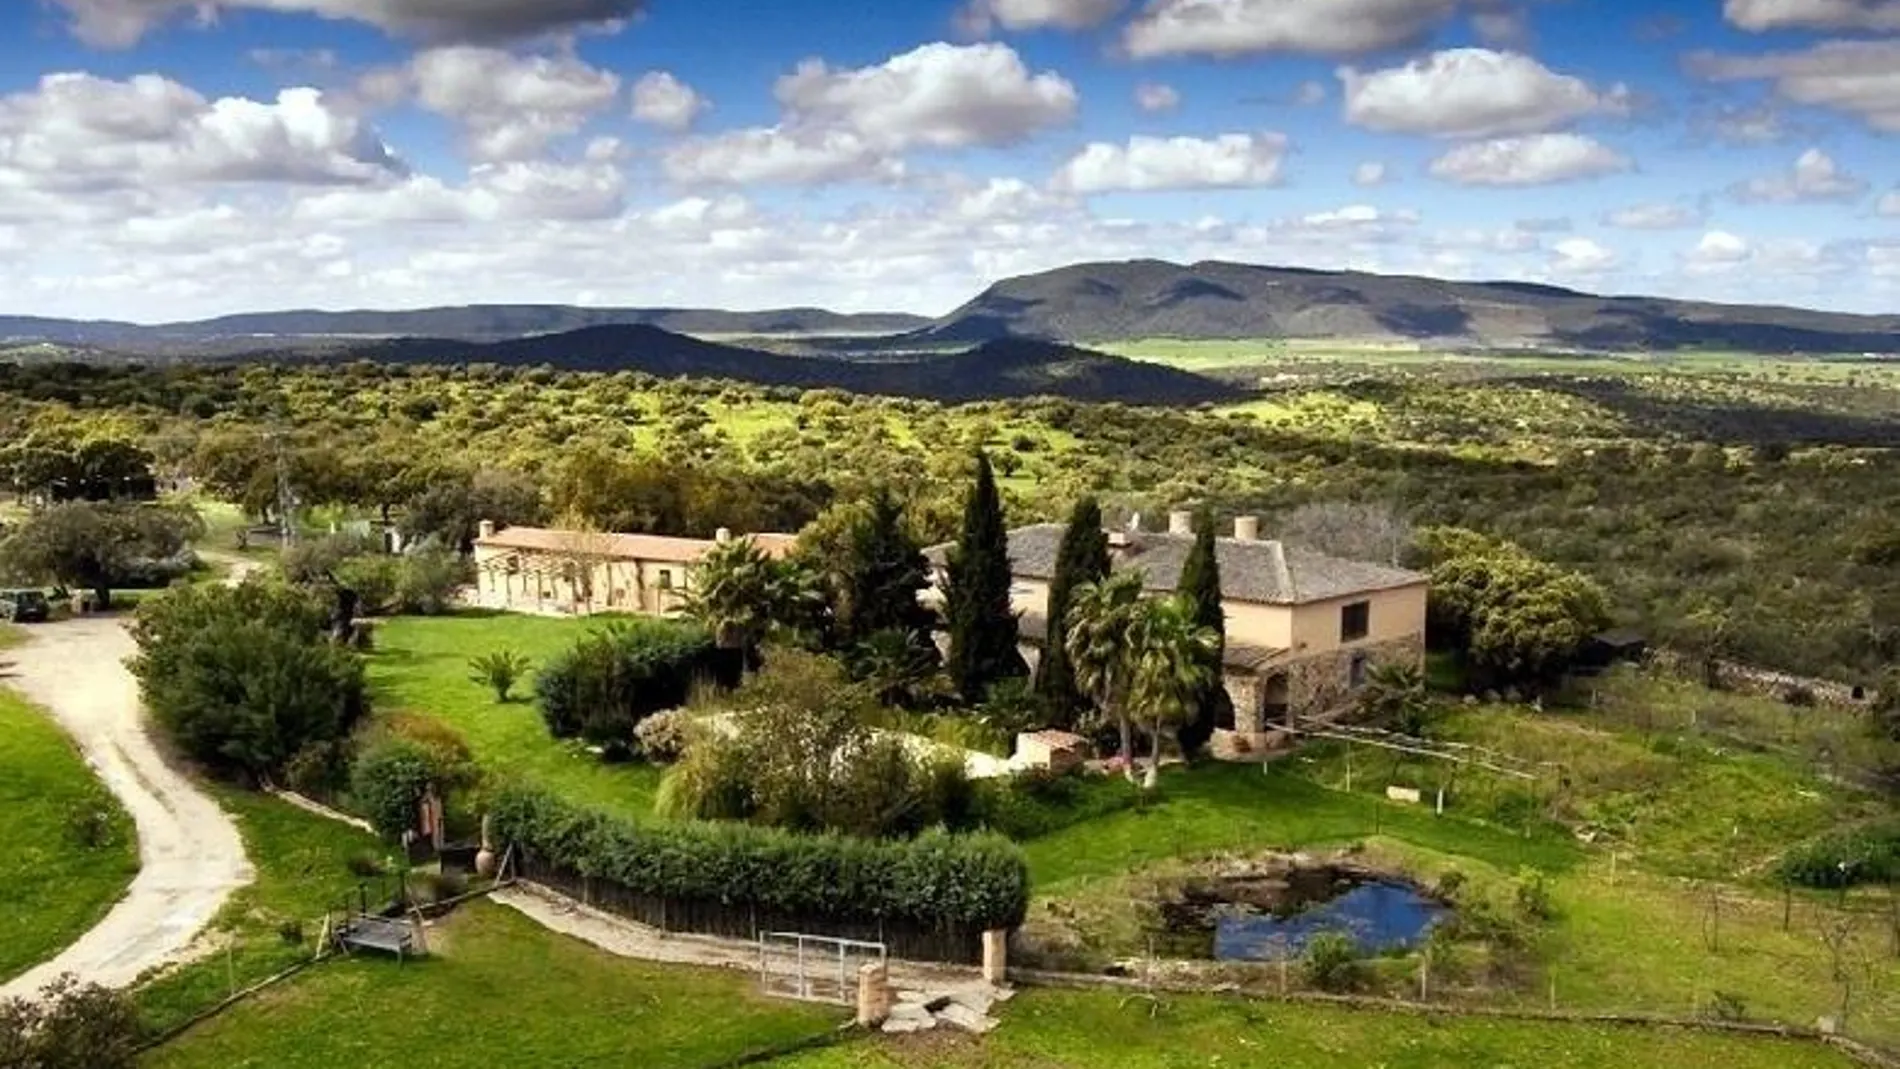 Imagen de una casa rural en Valle de Mira, Badajoz | Fuente: Europa Press